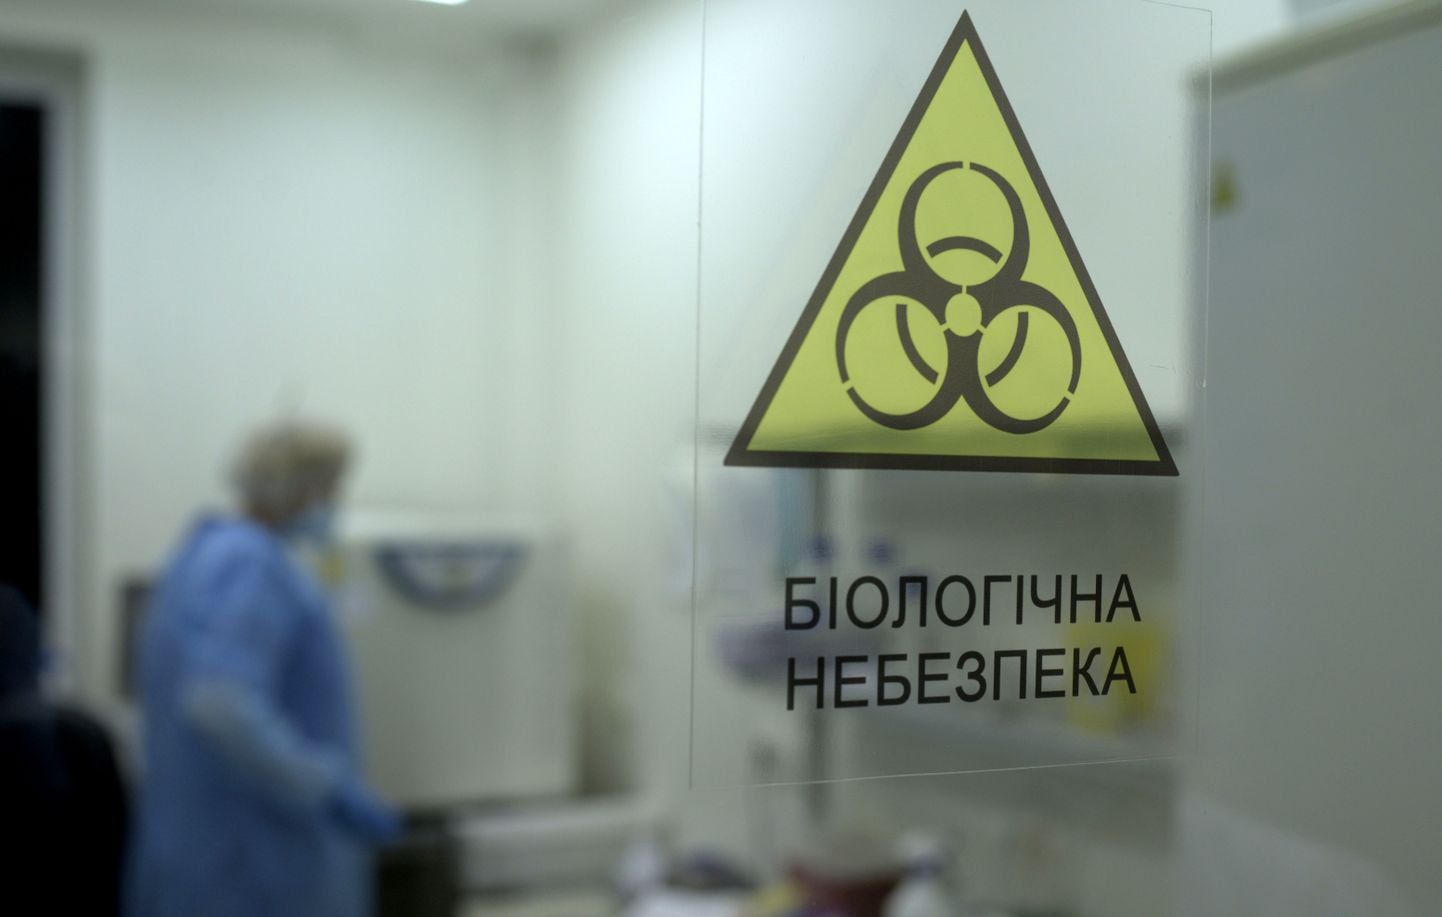 Bakterioloogia labor Lvivis riikliku sanitaar- ja epidemioloogiakeskuse laboratooriumis 2020. aastal. Ukraina bioloogilised uurimisasutused tegelevad vaid biokaitse ja rahvatervise küsimustega.